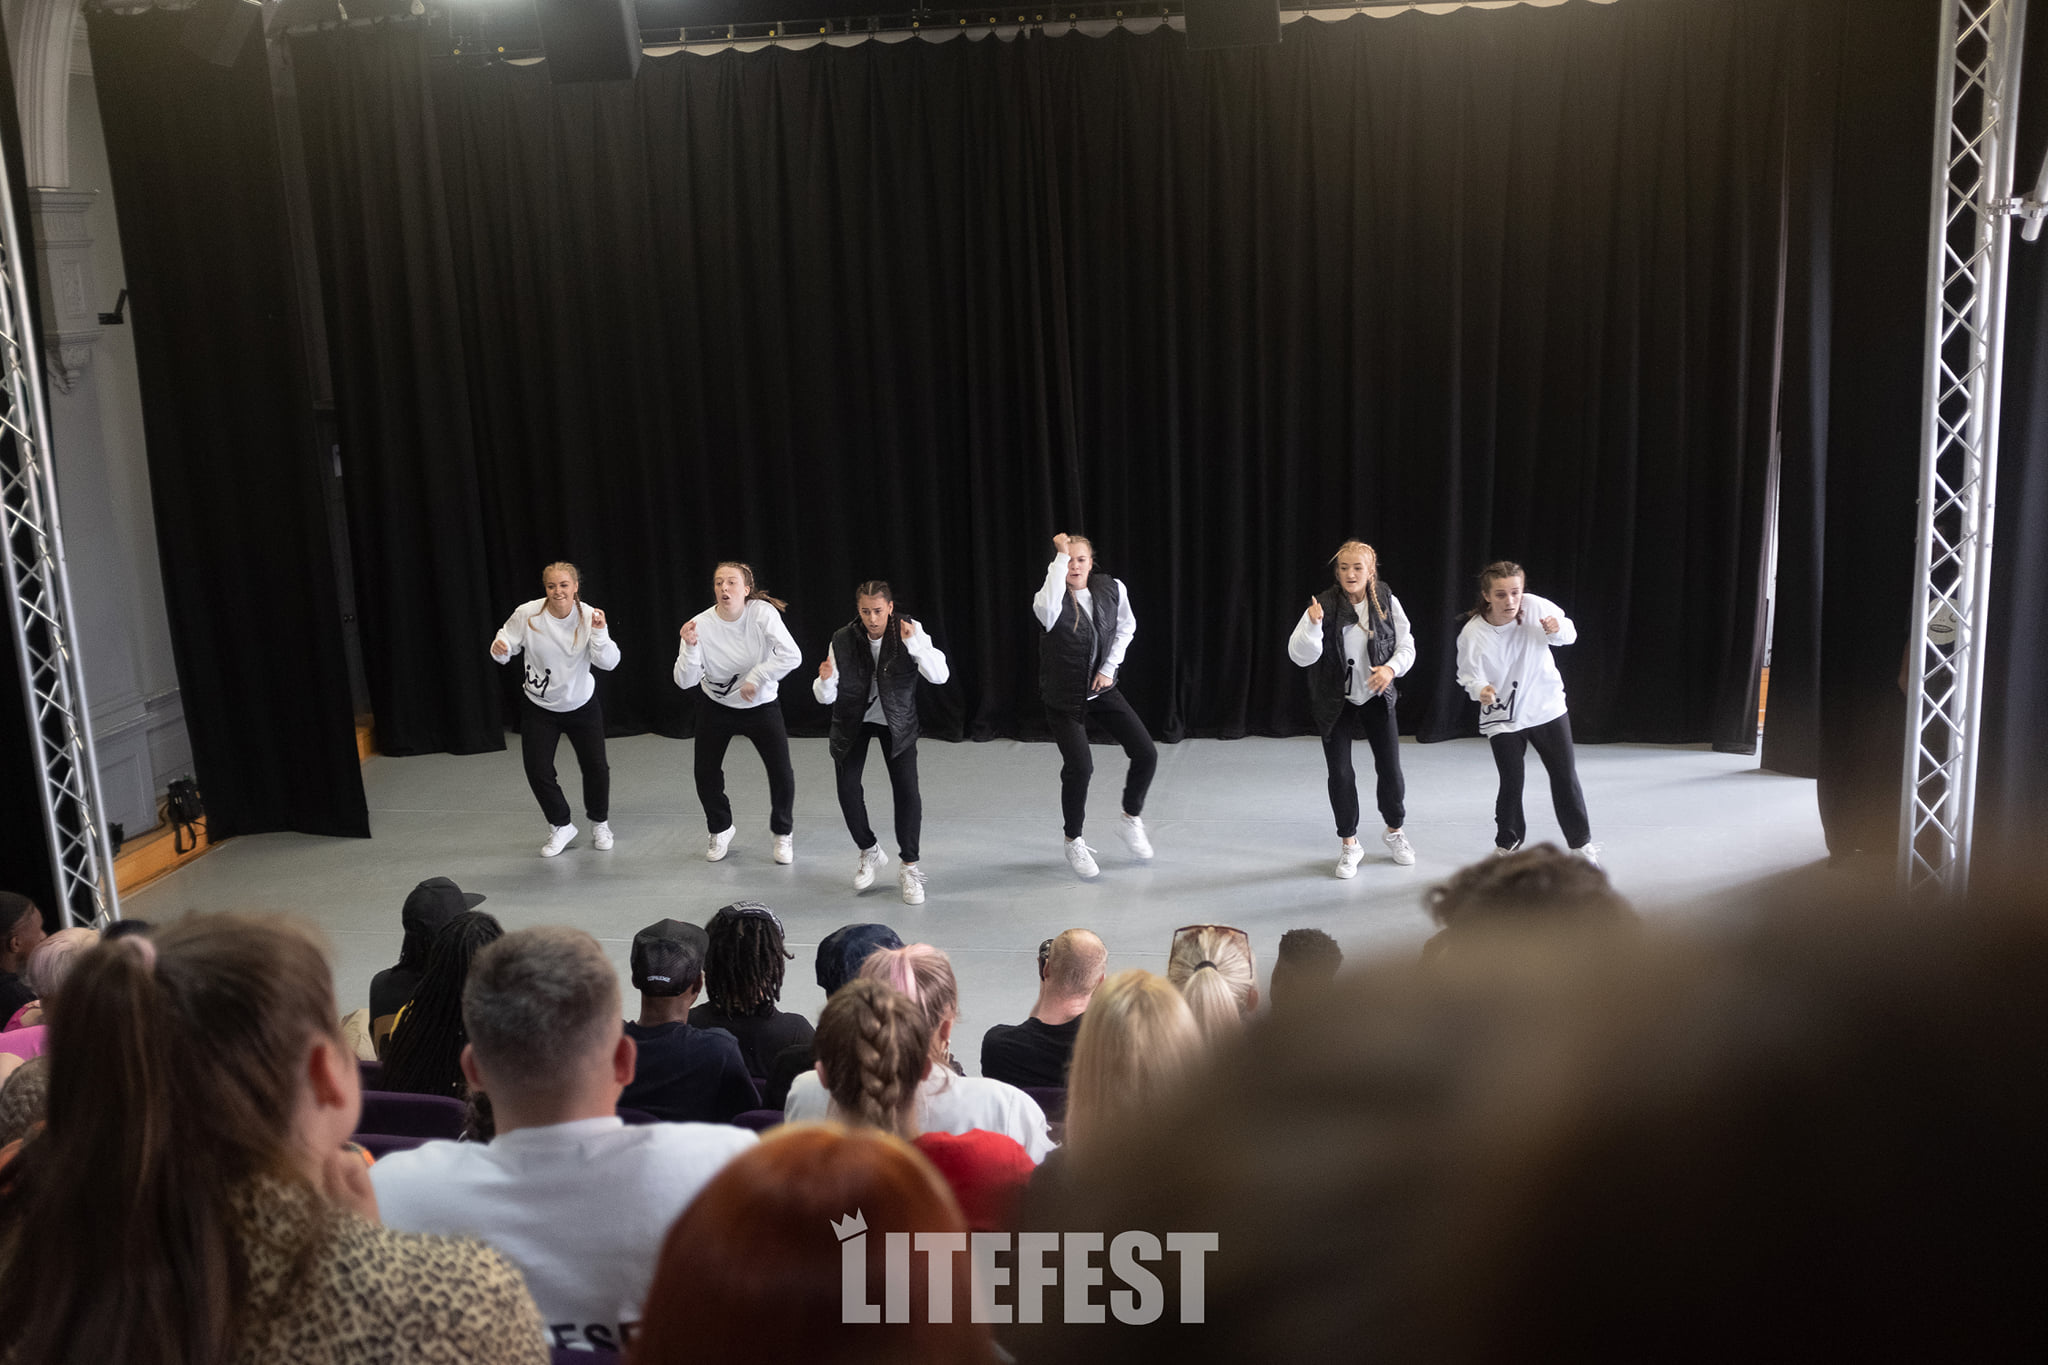 Litefest-26